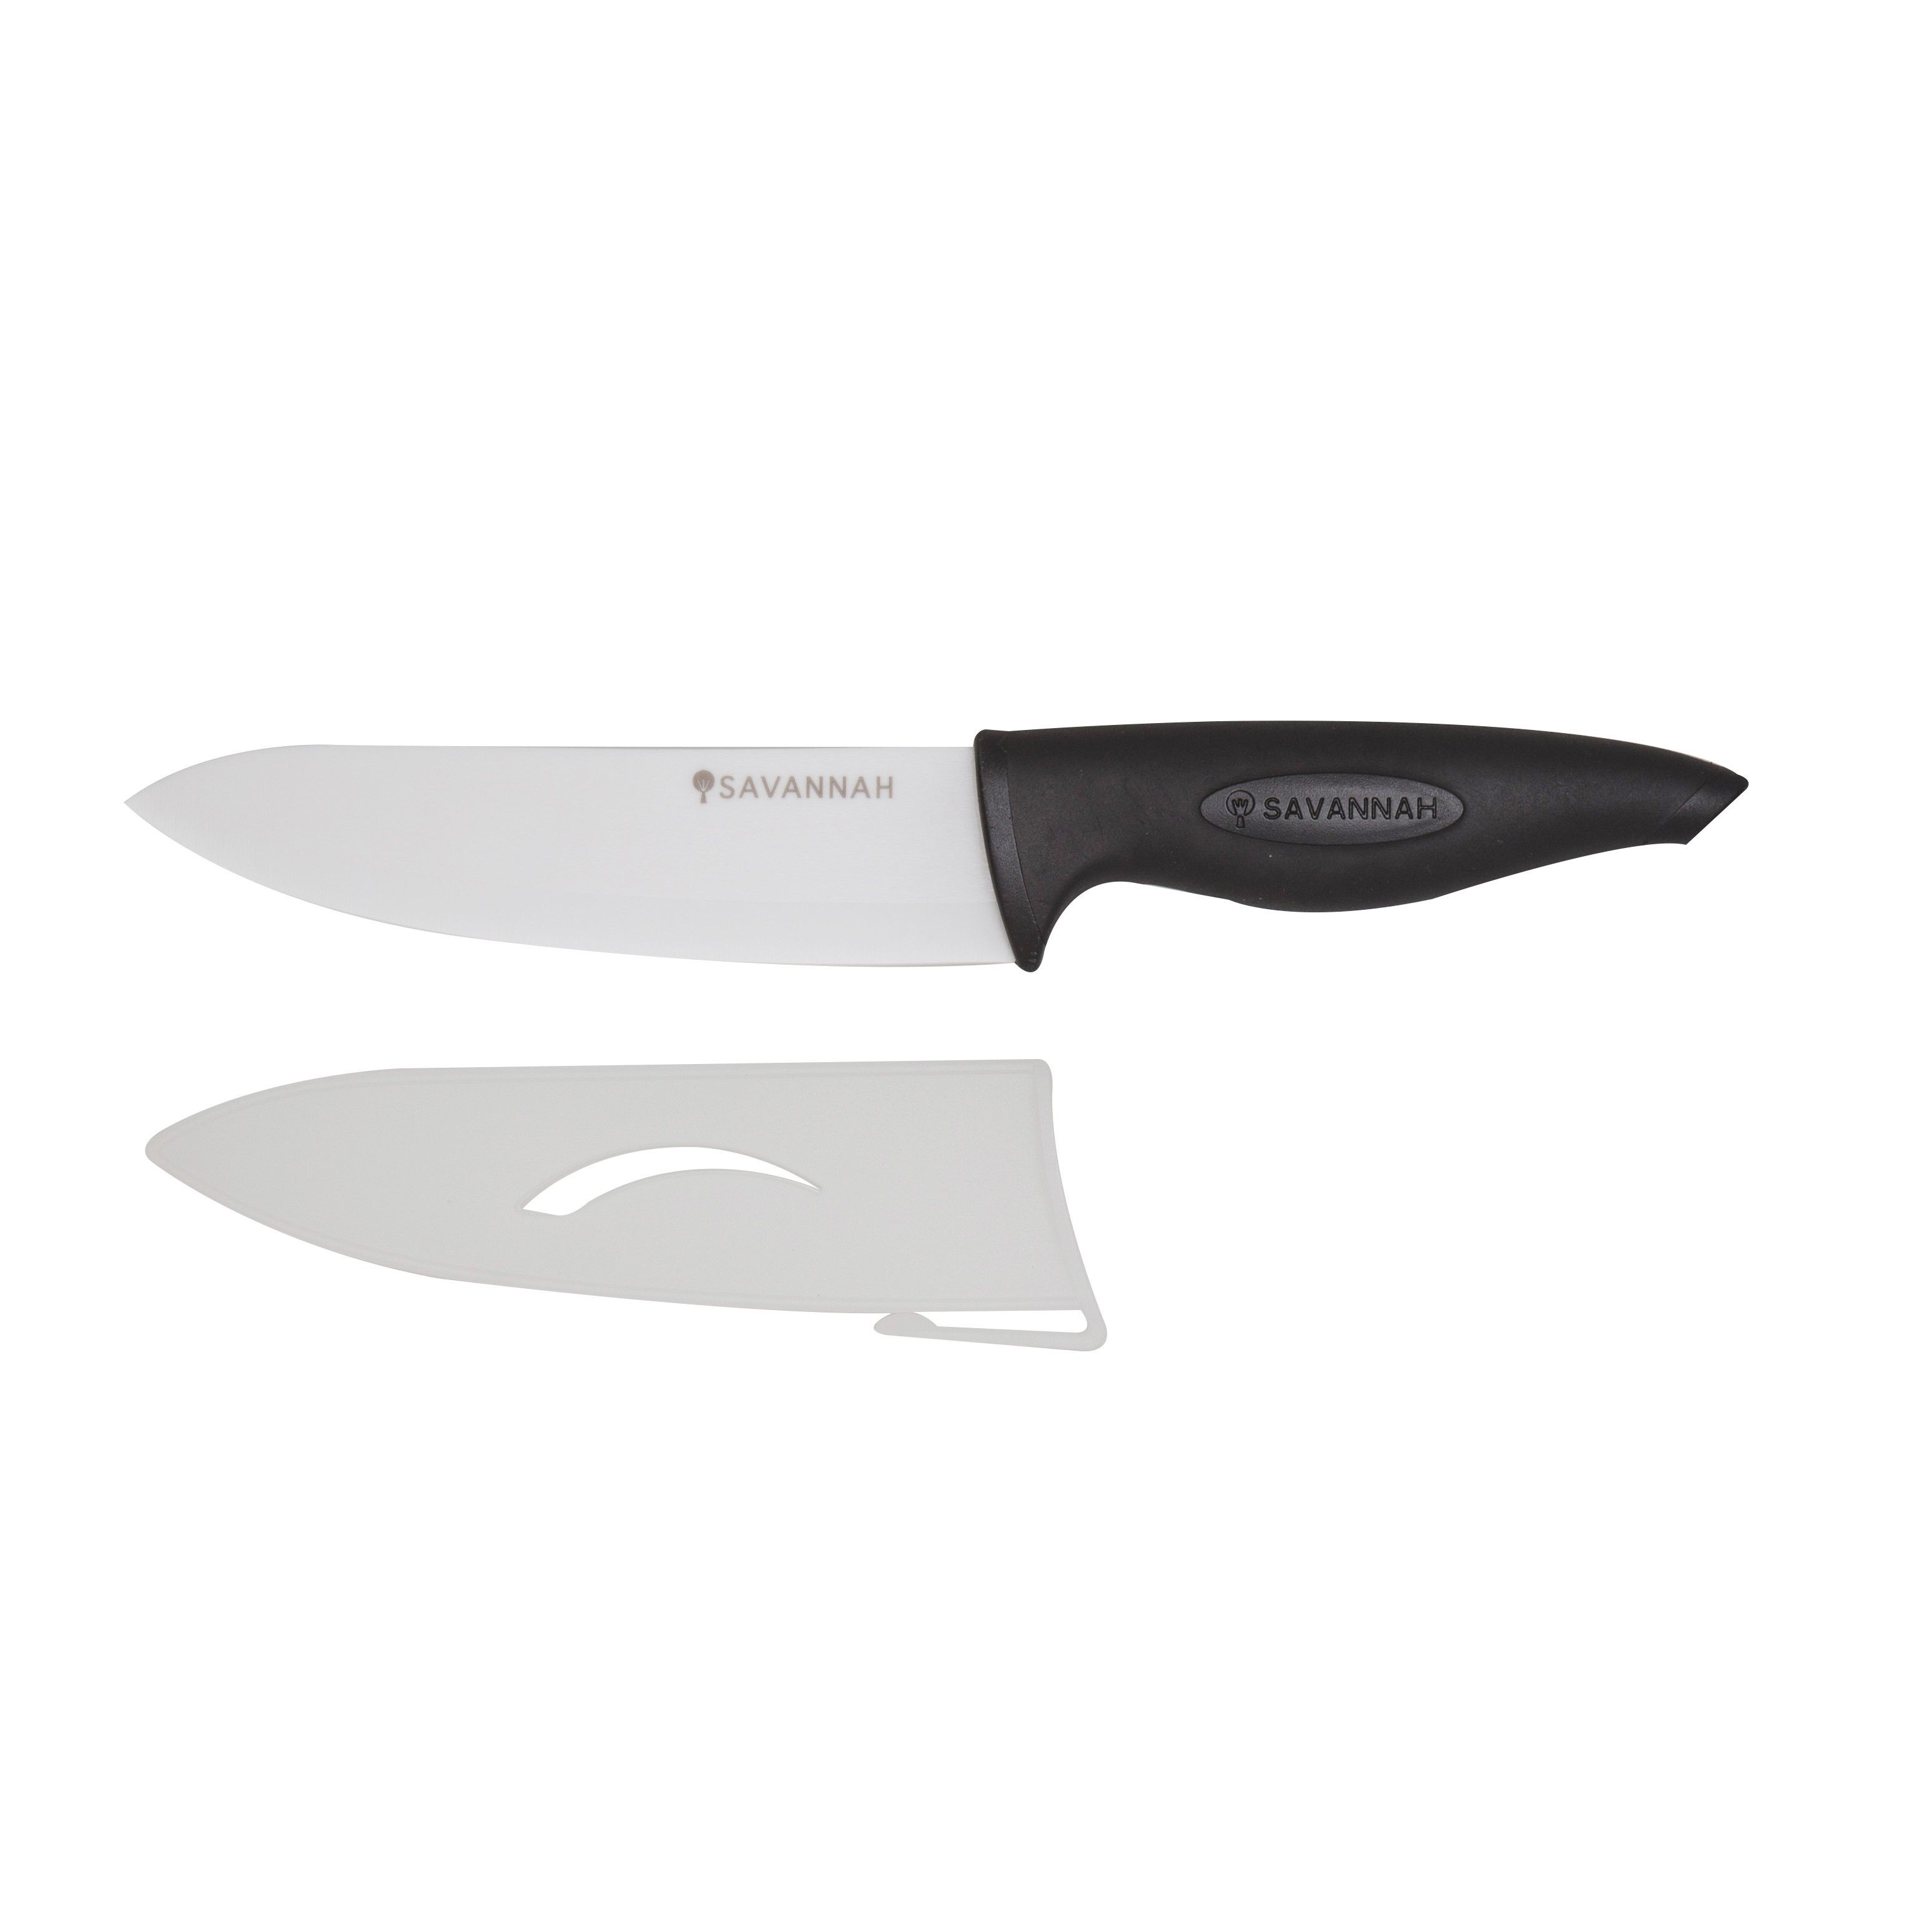 Savannah Ceramic Chefs Knife & Sheath White Black 16cm Blade 38x5x2cm